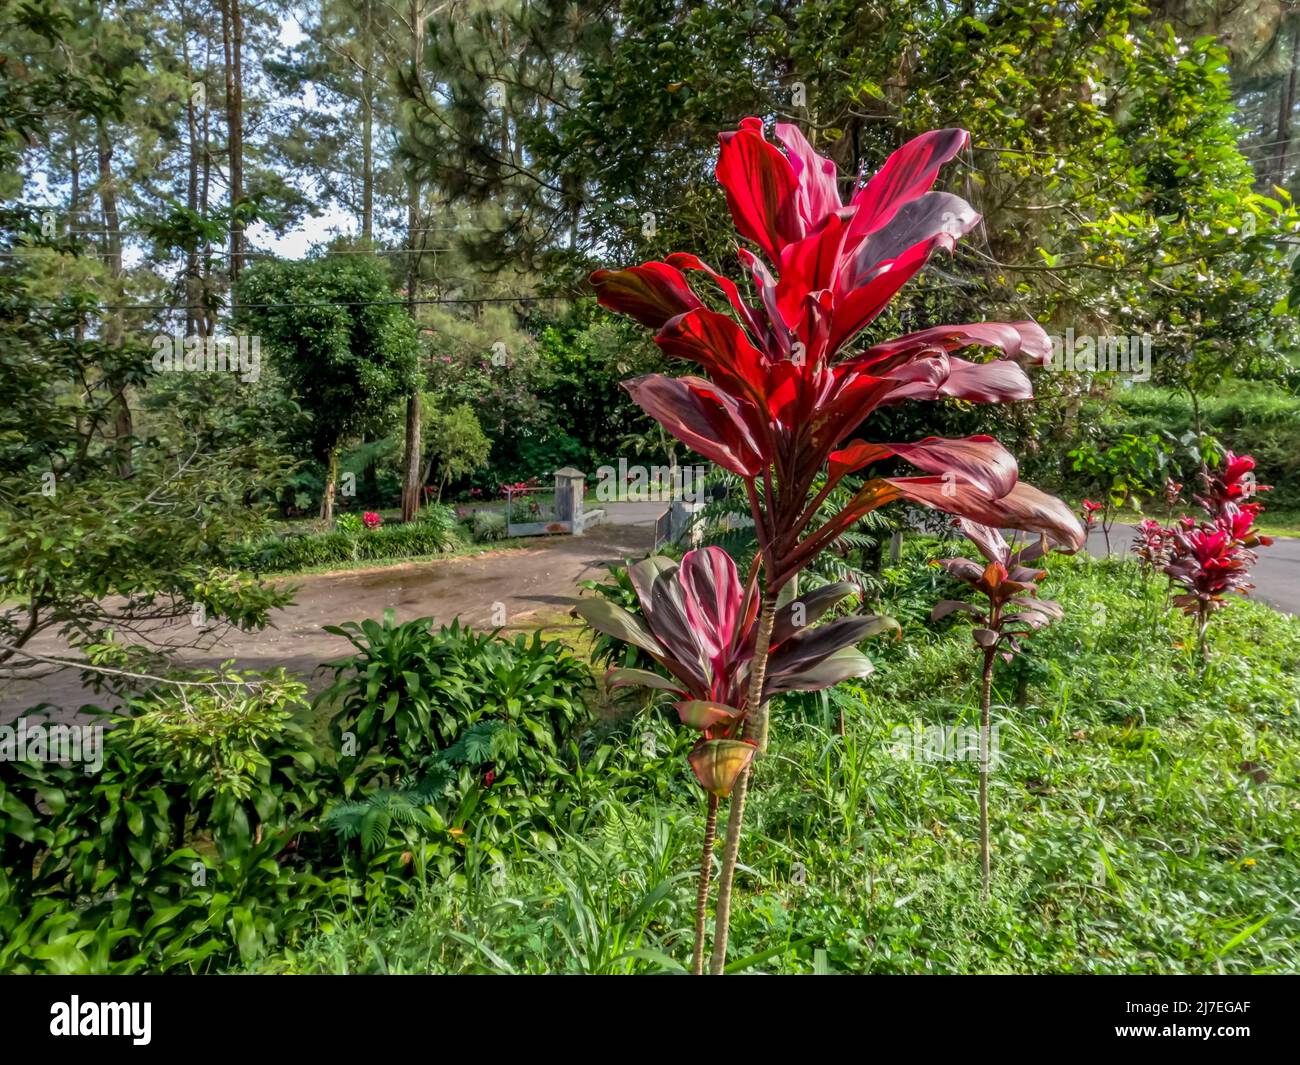 Pianta di palma-giglio a foglia larga che ha attraenti foglie a motivi rossi e verdi, piantate sul lato della strada, come una decorazione di strada del villaggio Foto Stock